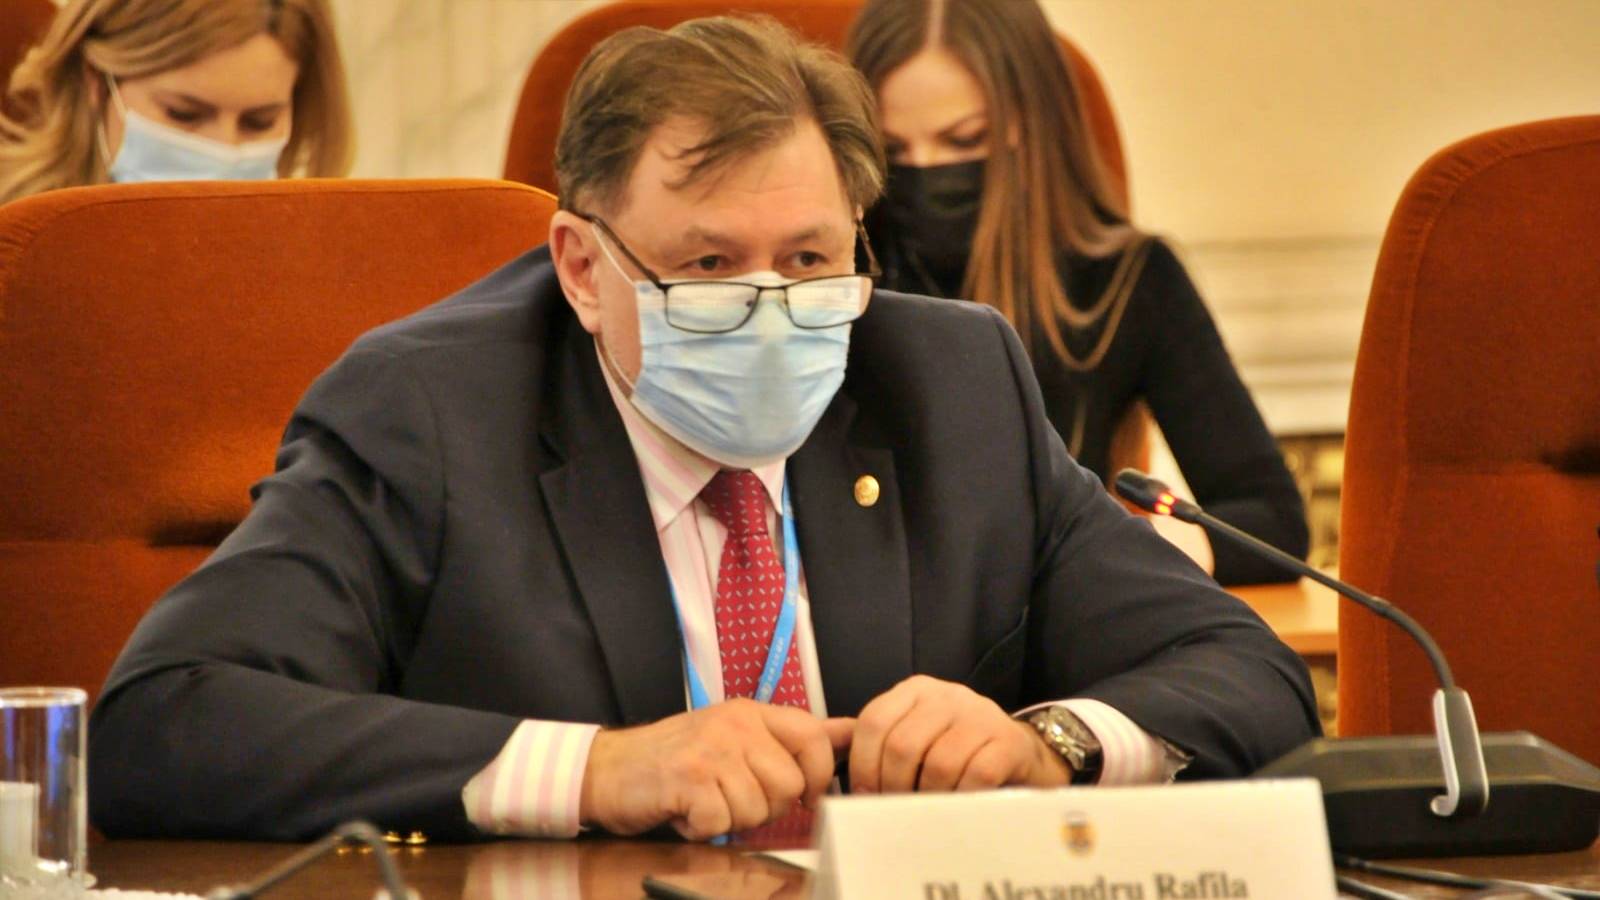 Minister van Volksgezondheid Last Minute Verklaring Miljoenen Roemenen geïnformeerd